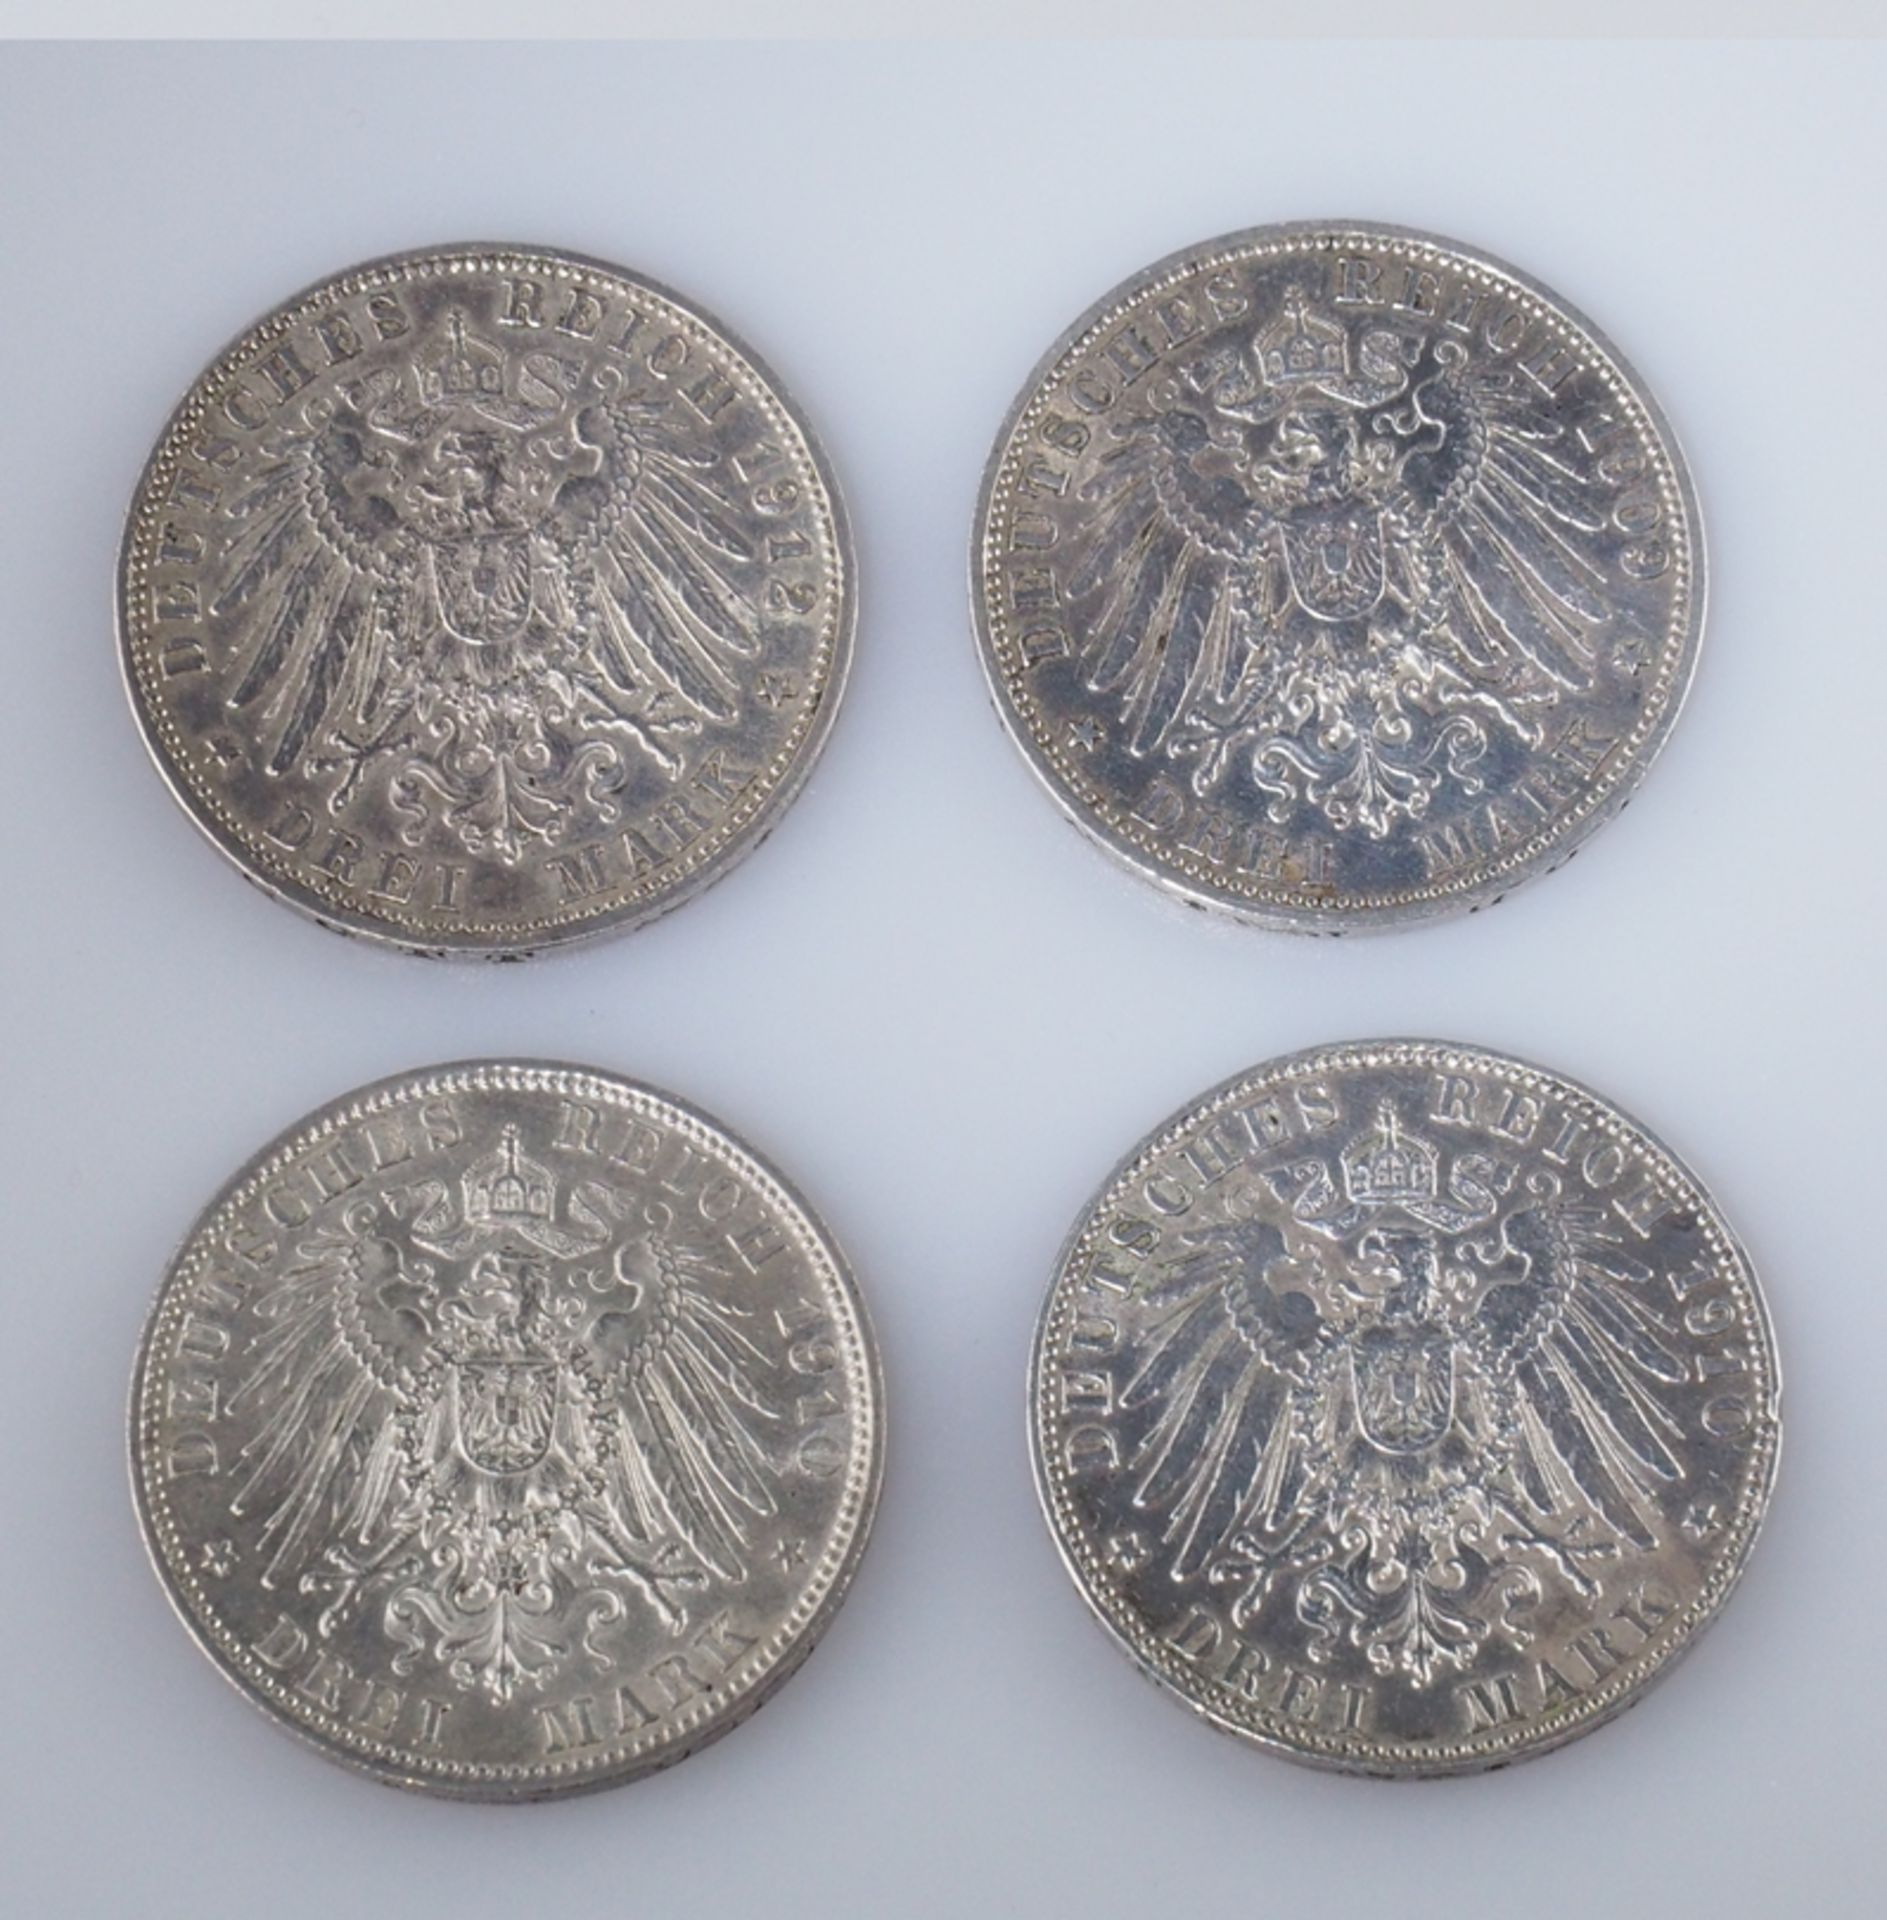 Bayern. Drei Mark. Vier Münzen. Ein Stück 1909, zwei Stück 1910, ein Stück 1912. J 47 - Bild 2 aus 2